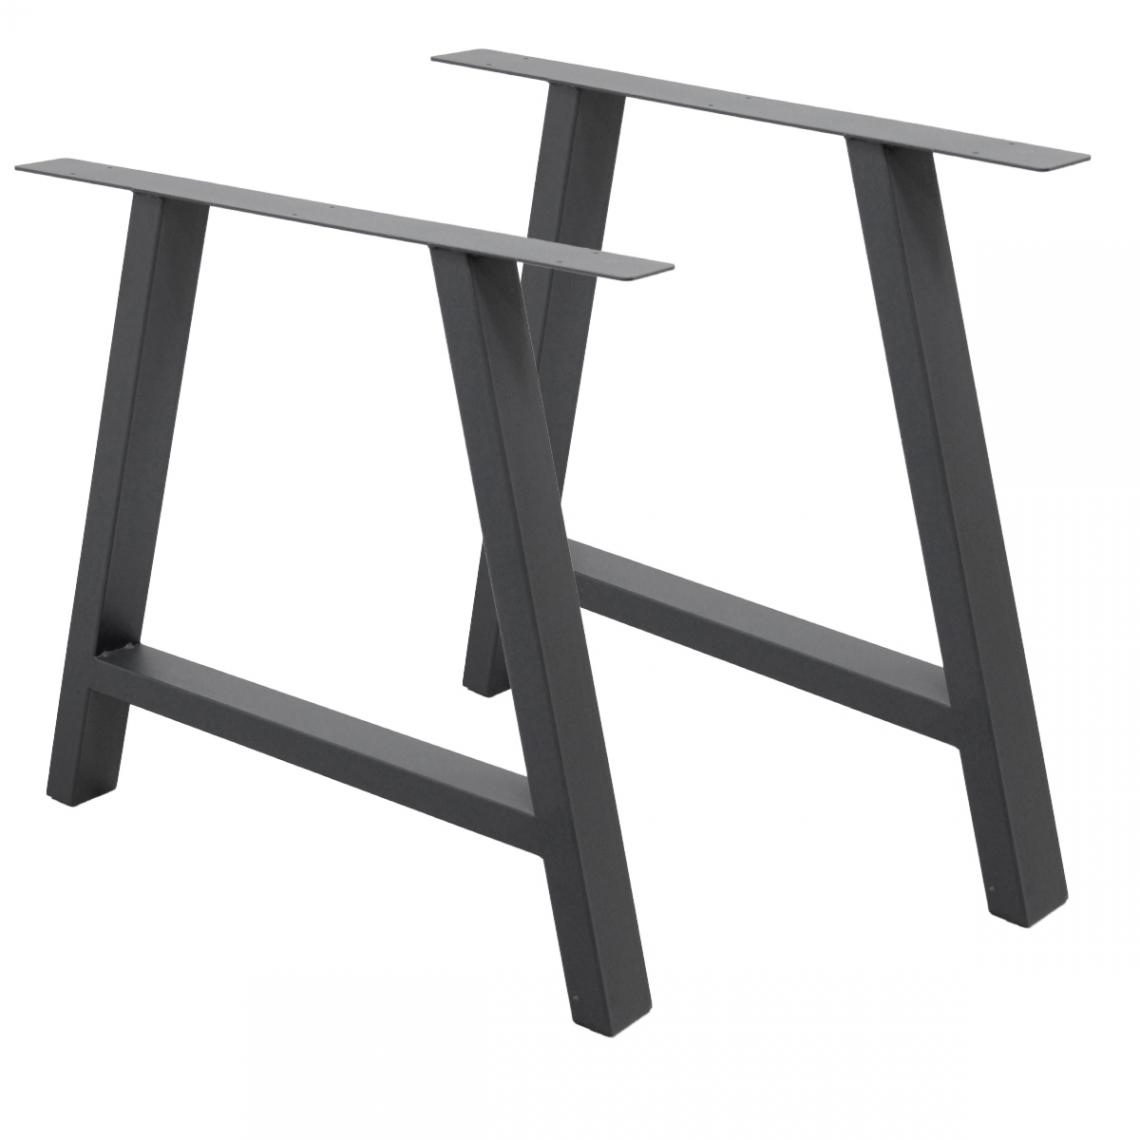 Ecd Germany - Set 2 Pieds de table pied de meuble acier forme A support banc gris 70 x 72 cm - Pieds & roulettes pour meuble